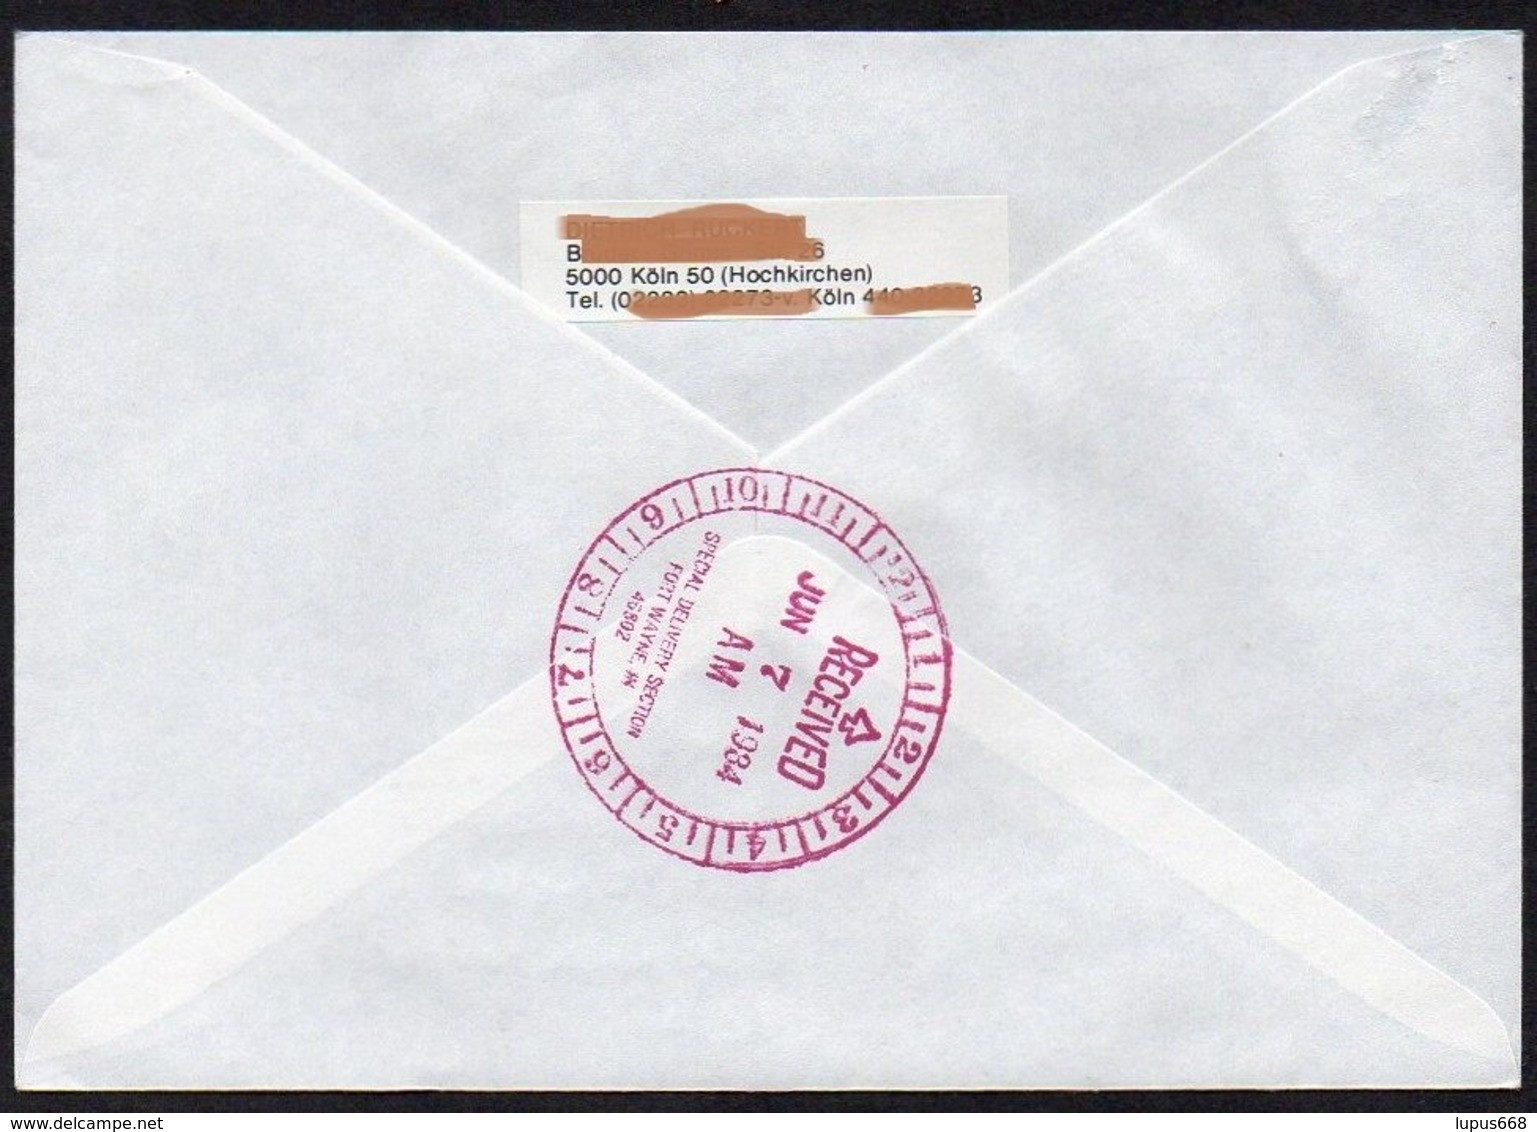 UNO - Wien  1984  MiNr. 44 (2)  Auf Express - Brief In Die U.S.A  ,  FDC; Eine Zukunft Für Flüchtlinge - Lettres & Documents